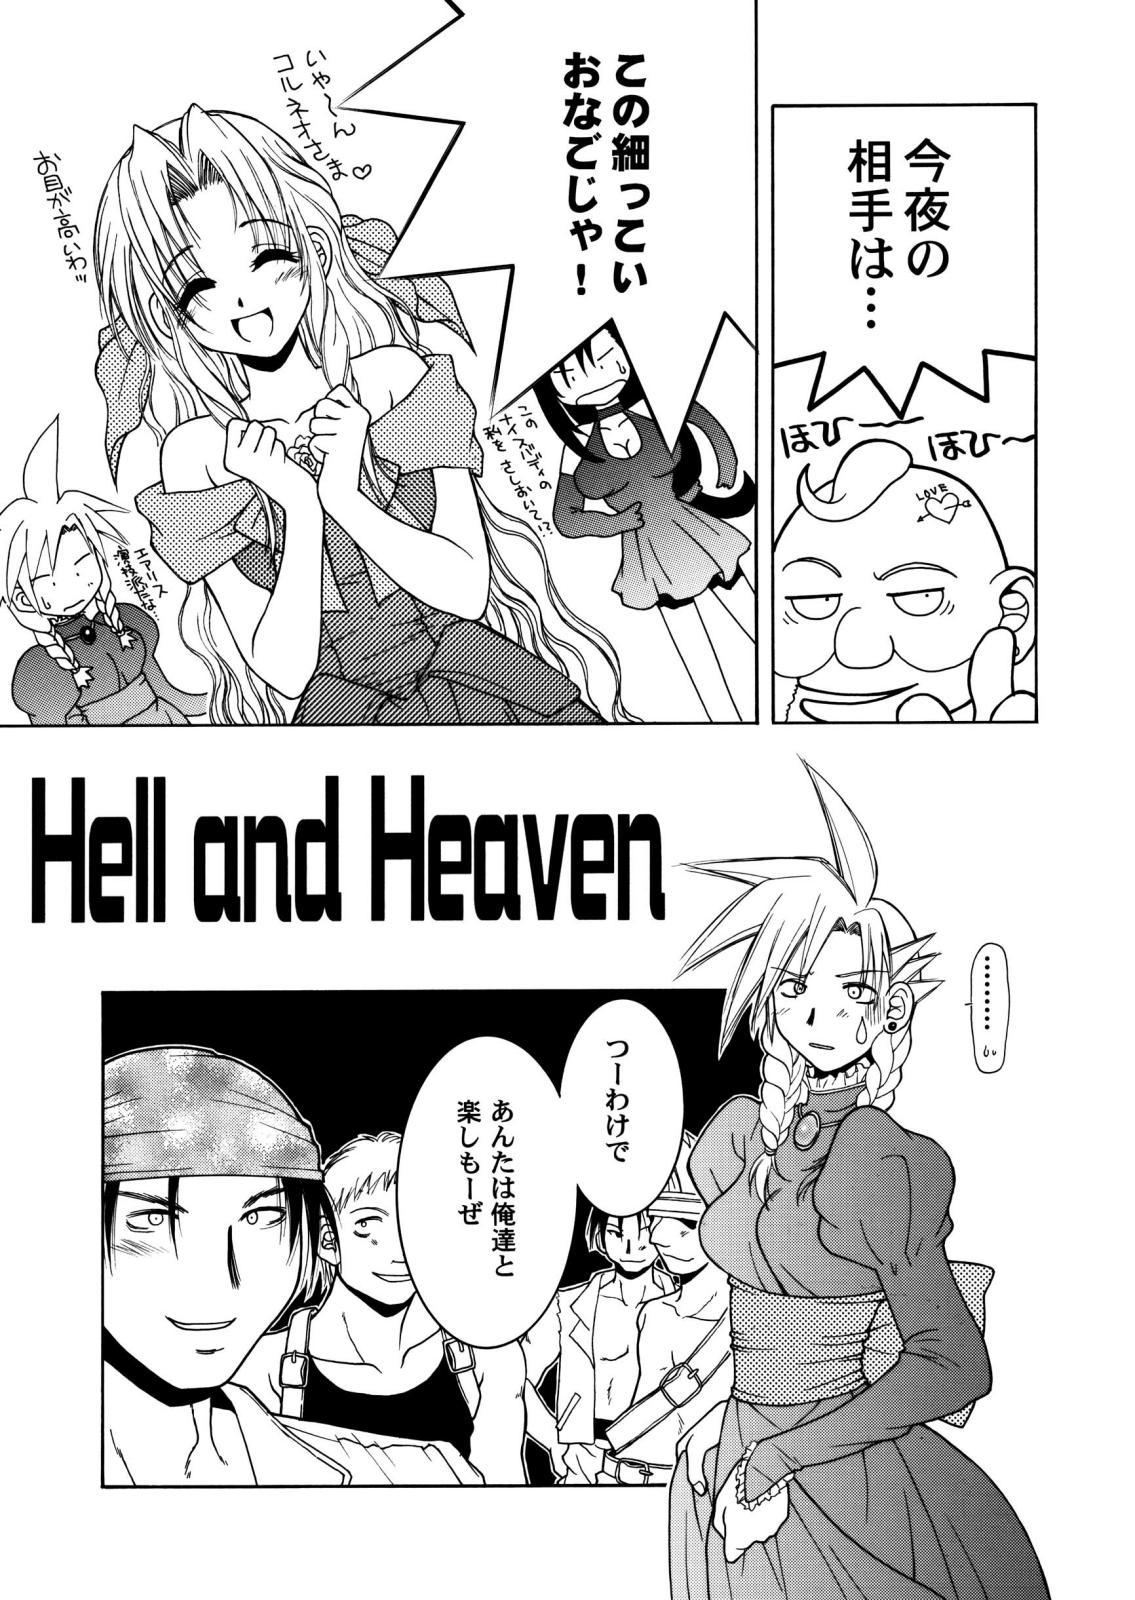 Final Heaven 23